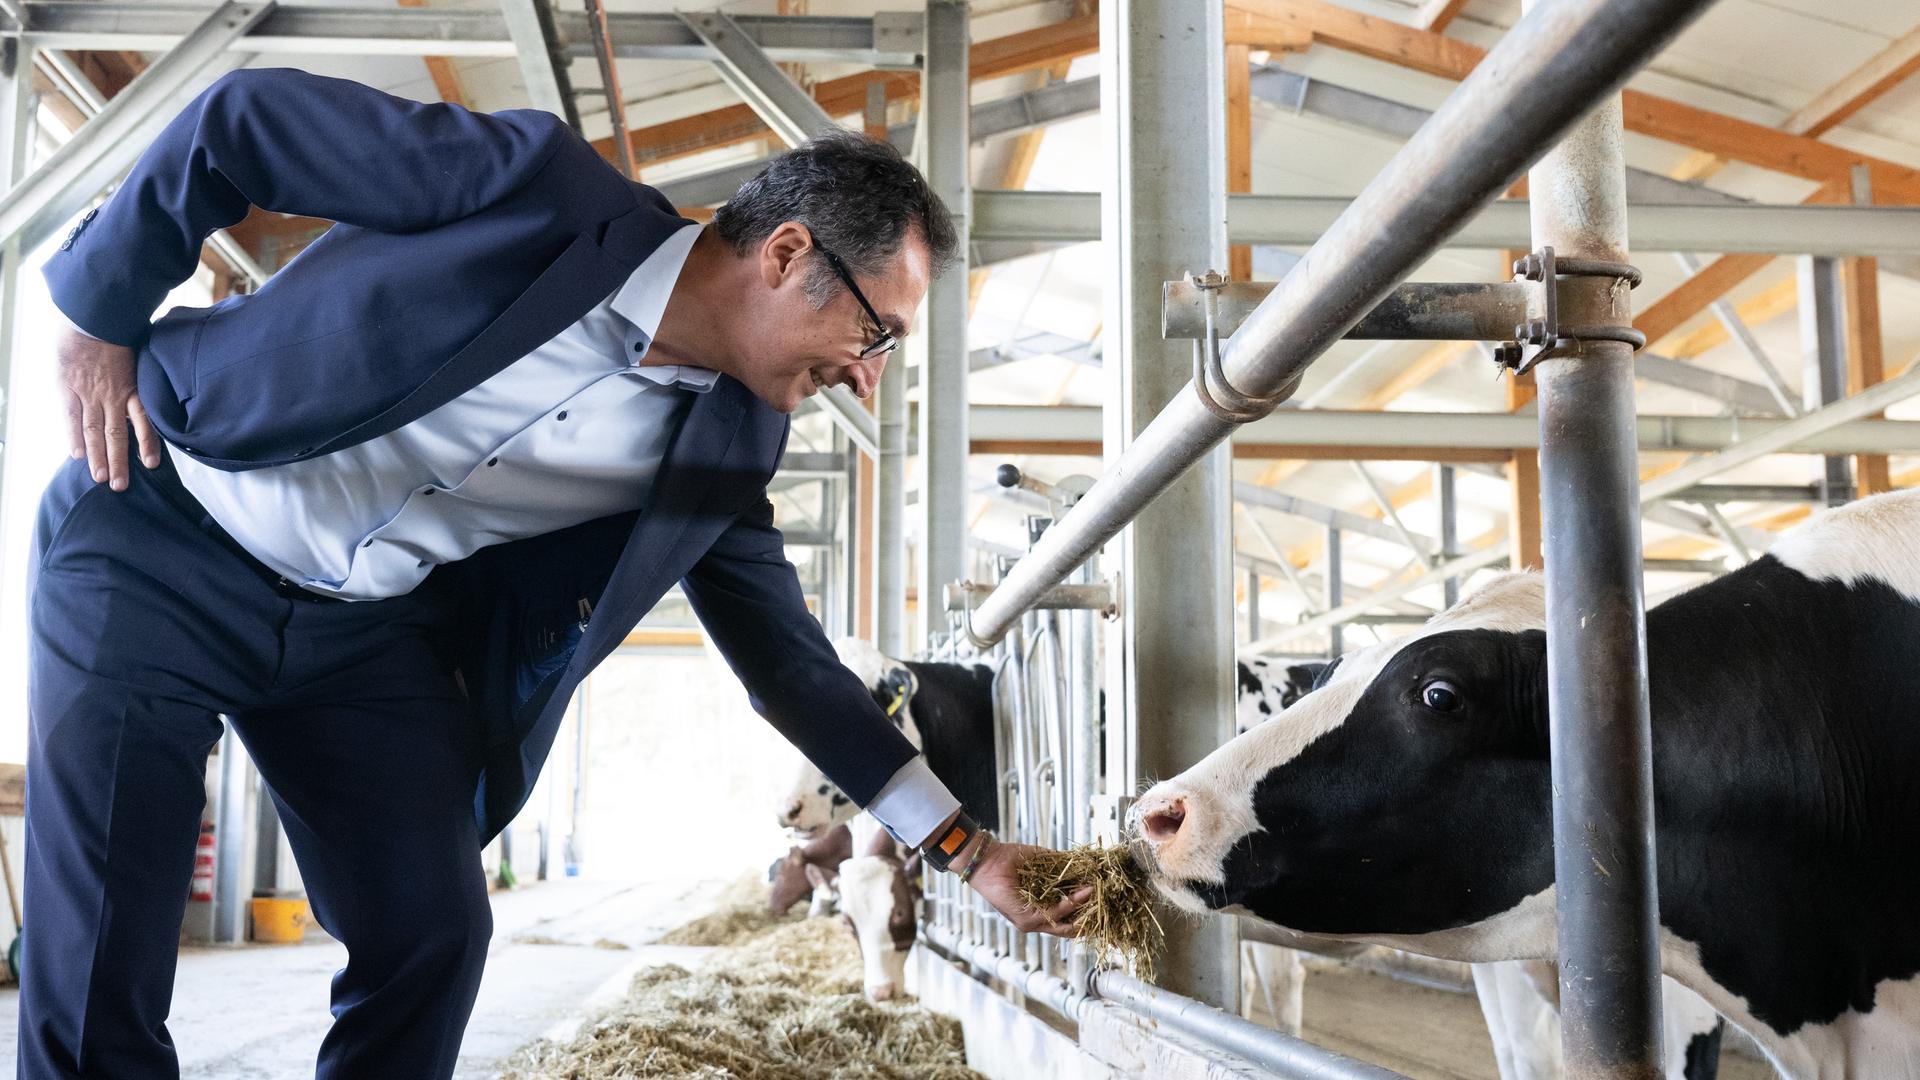 Landwirtschaftsminister Özdemir füttert eine Kuh.